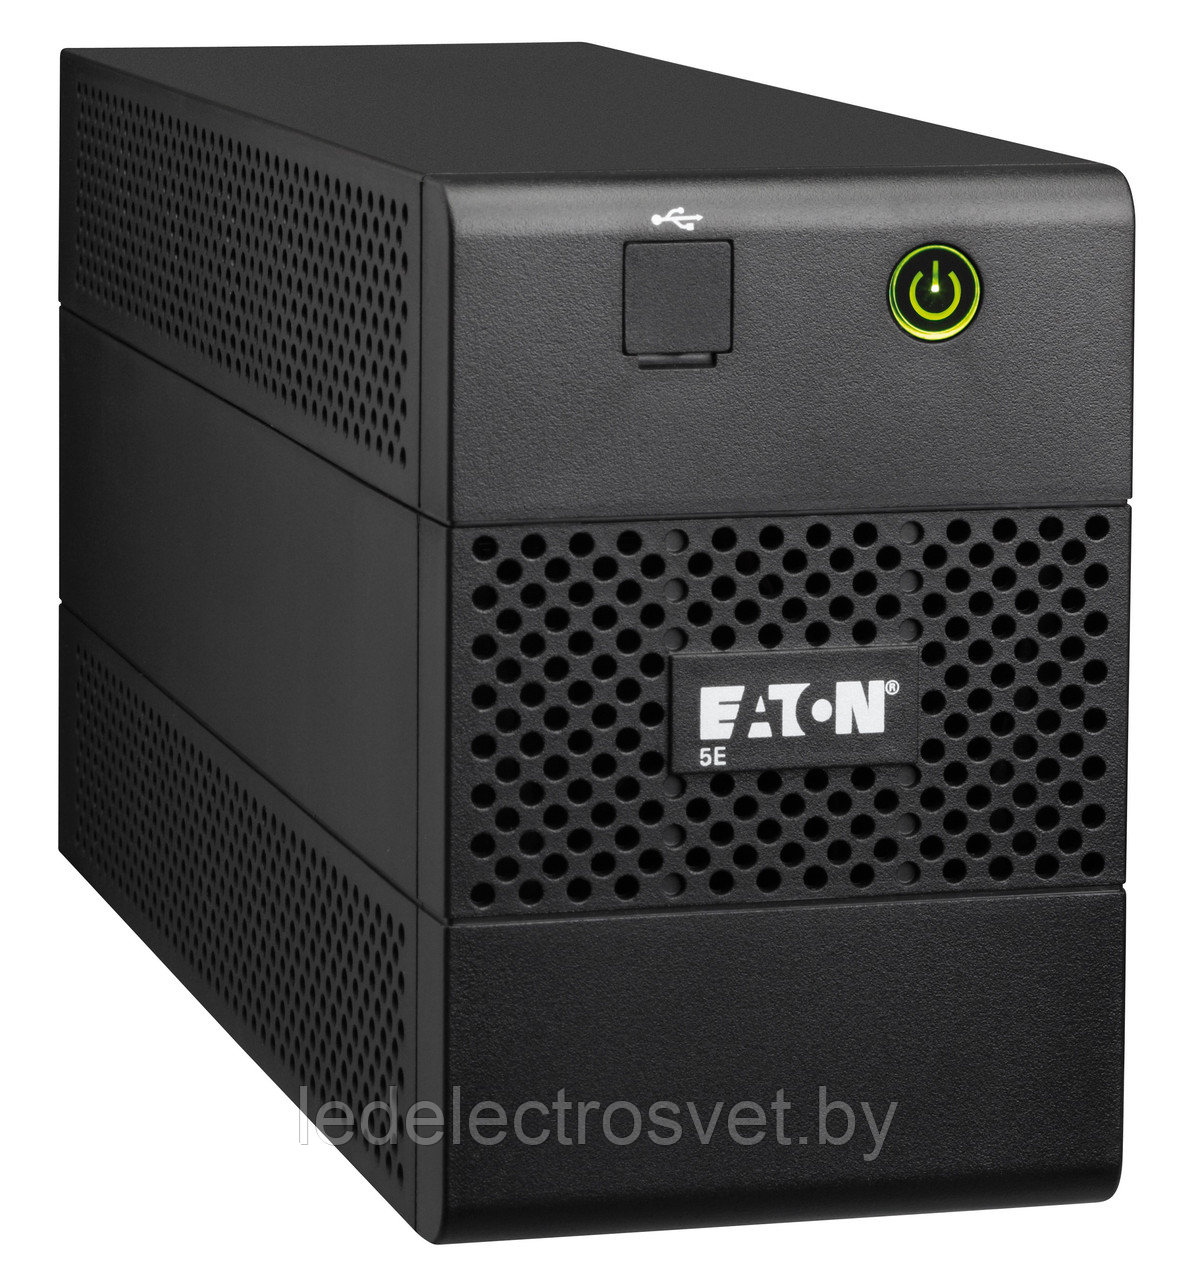 ИБП Eaton 5E 650i USB DIN (650ВА, 360Вт, 1 евророзетка + 2 розетки IEC C13)